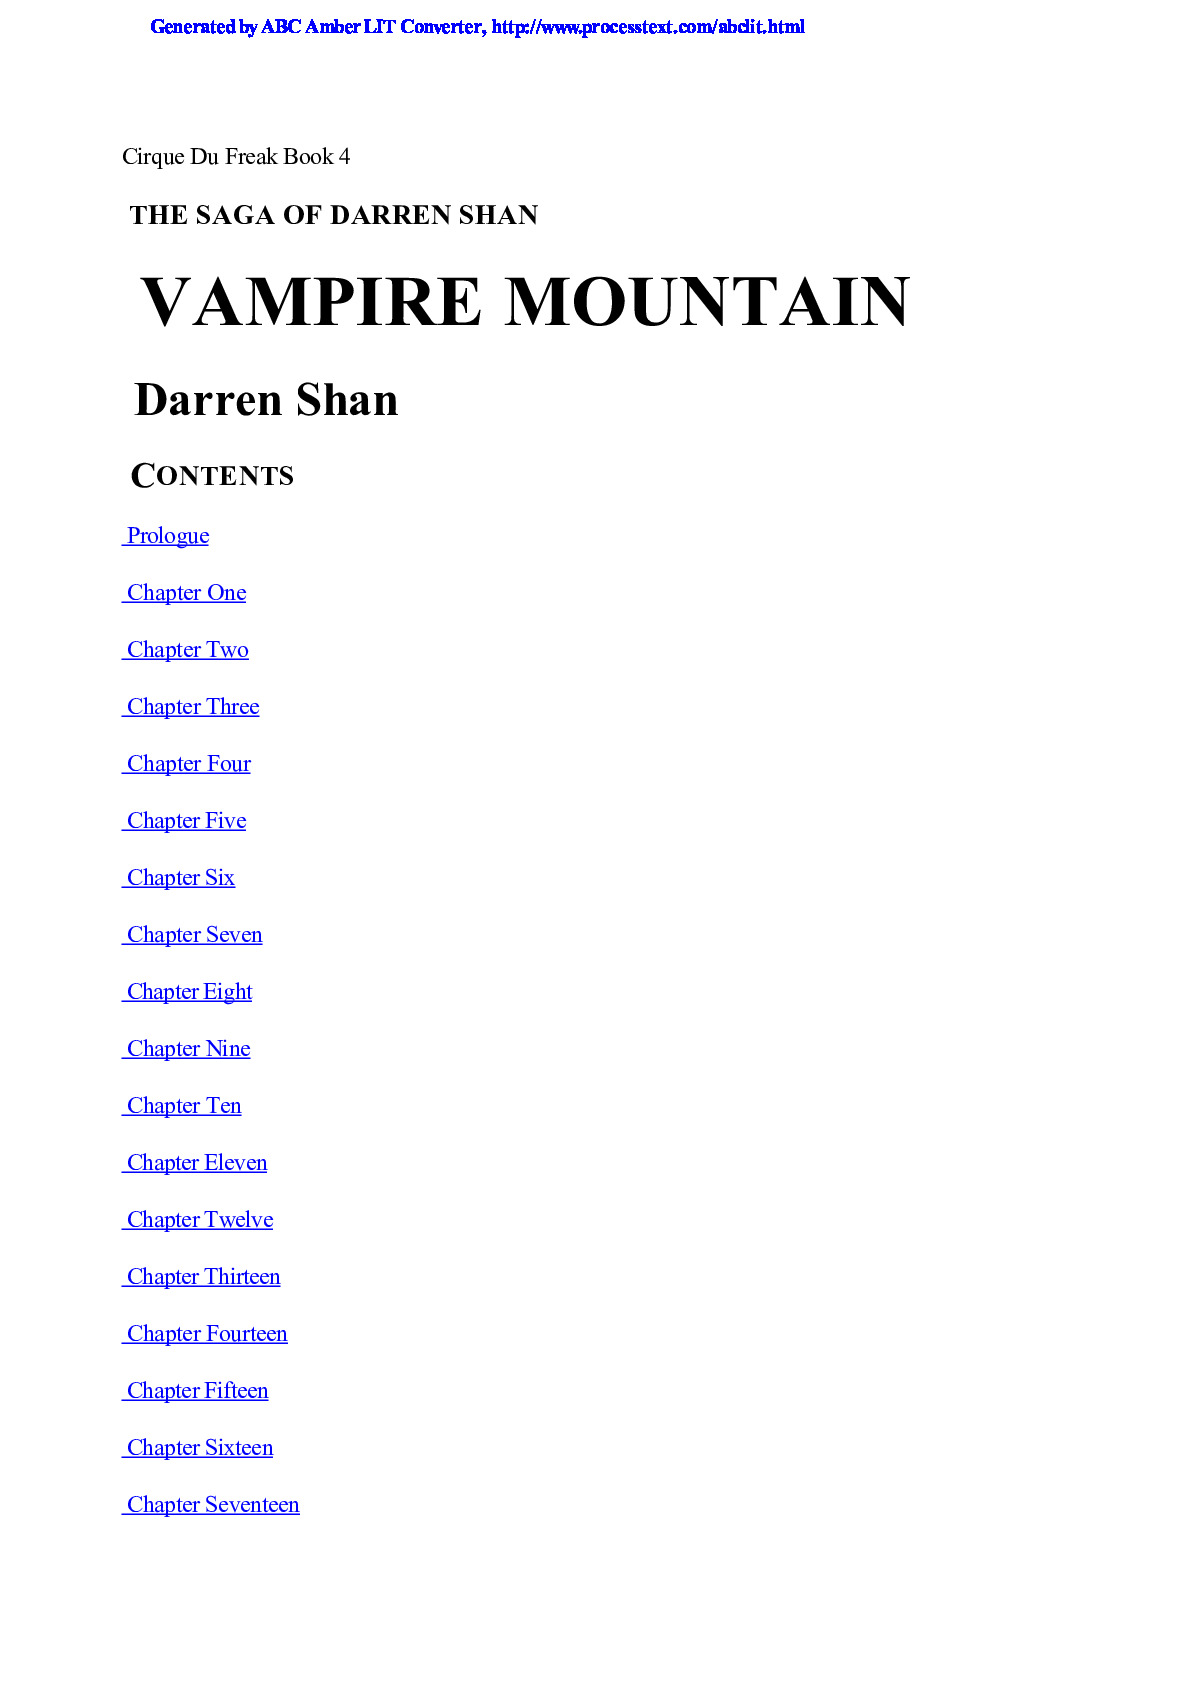 Shan, Darren – Cirque Du Freak 04 – Vampire Mountain